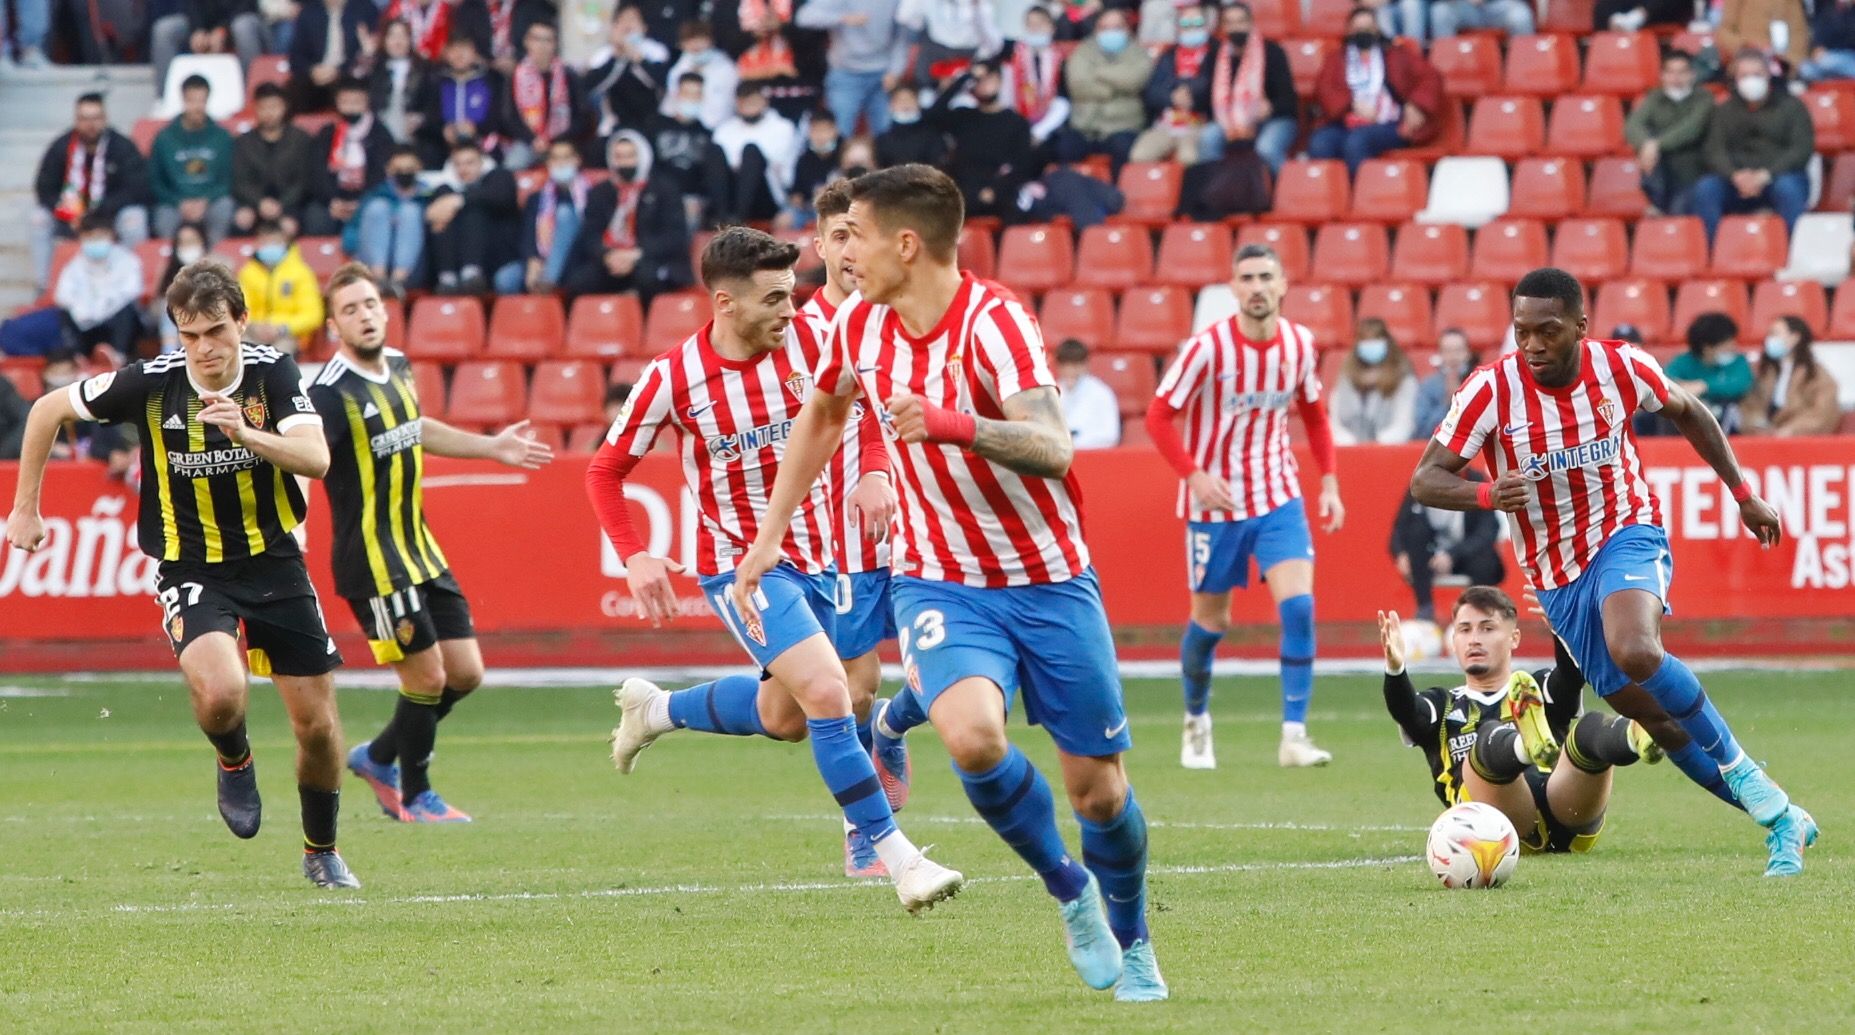 Sporting - Zaragoza, en imágenes